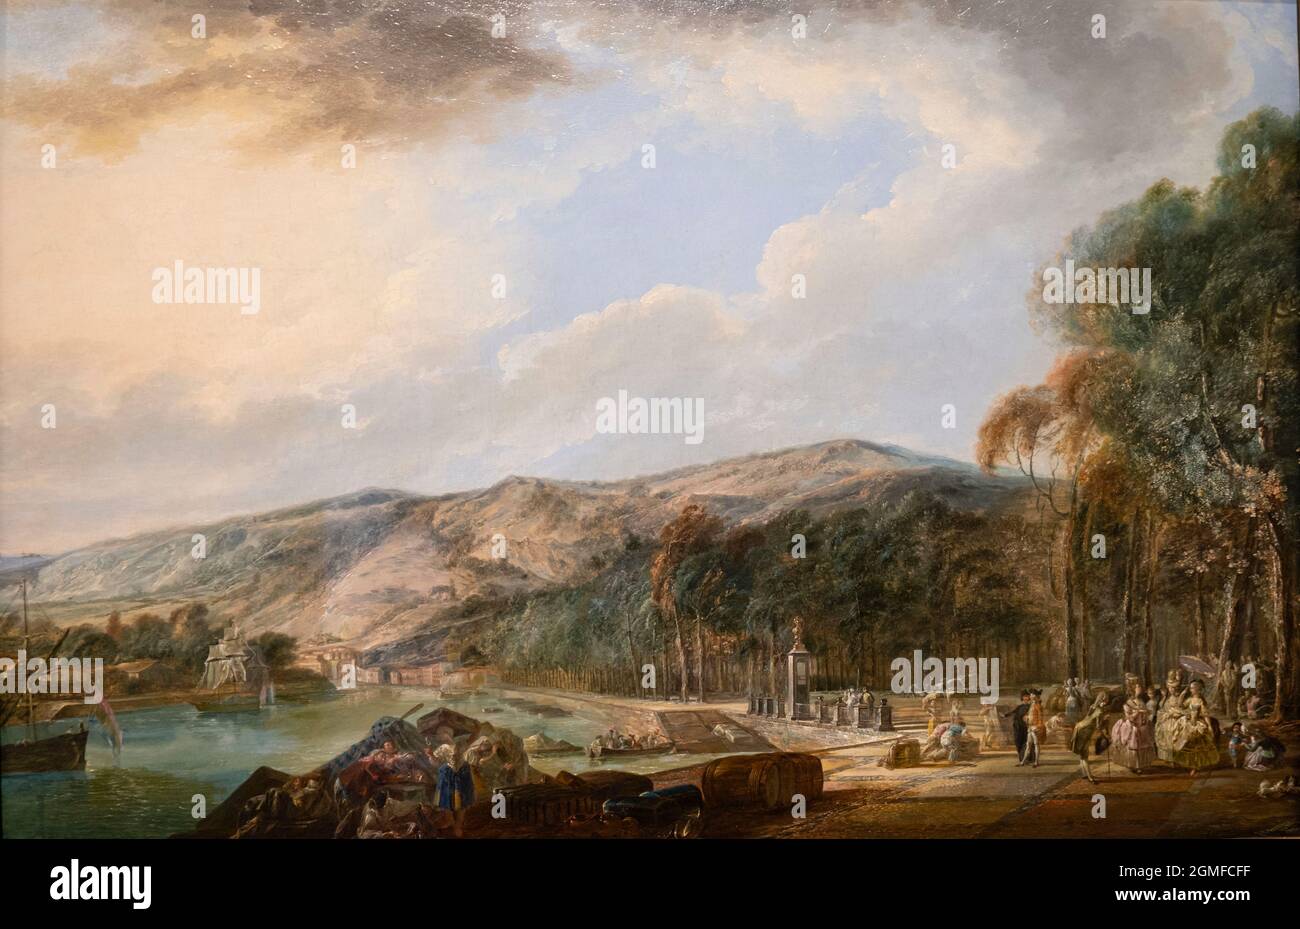 Vista del banco de arena de Bilbao, Luis Paret y Alcázar. 1784, óleo sobre panel, Museo de Bellas Artes, Bilbao, España. Foto de stock